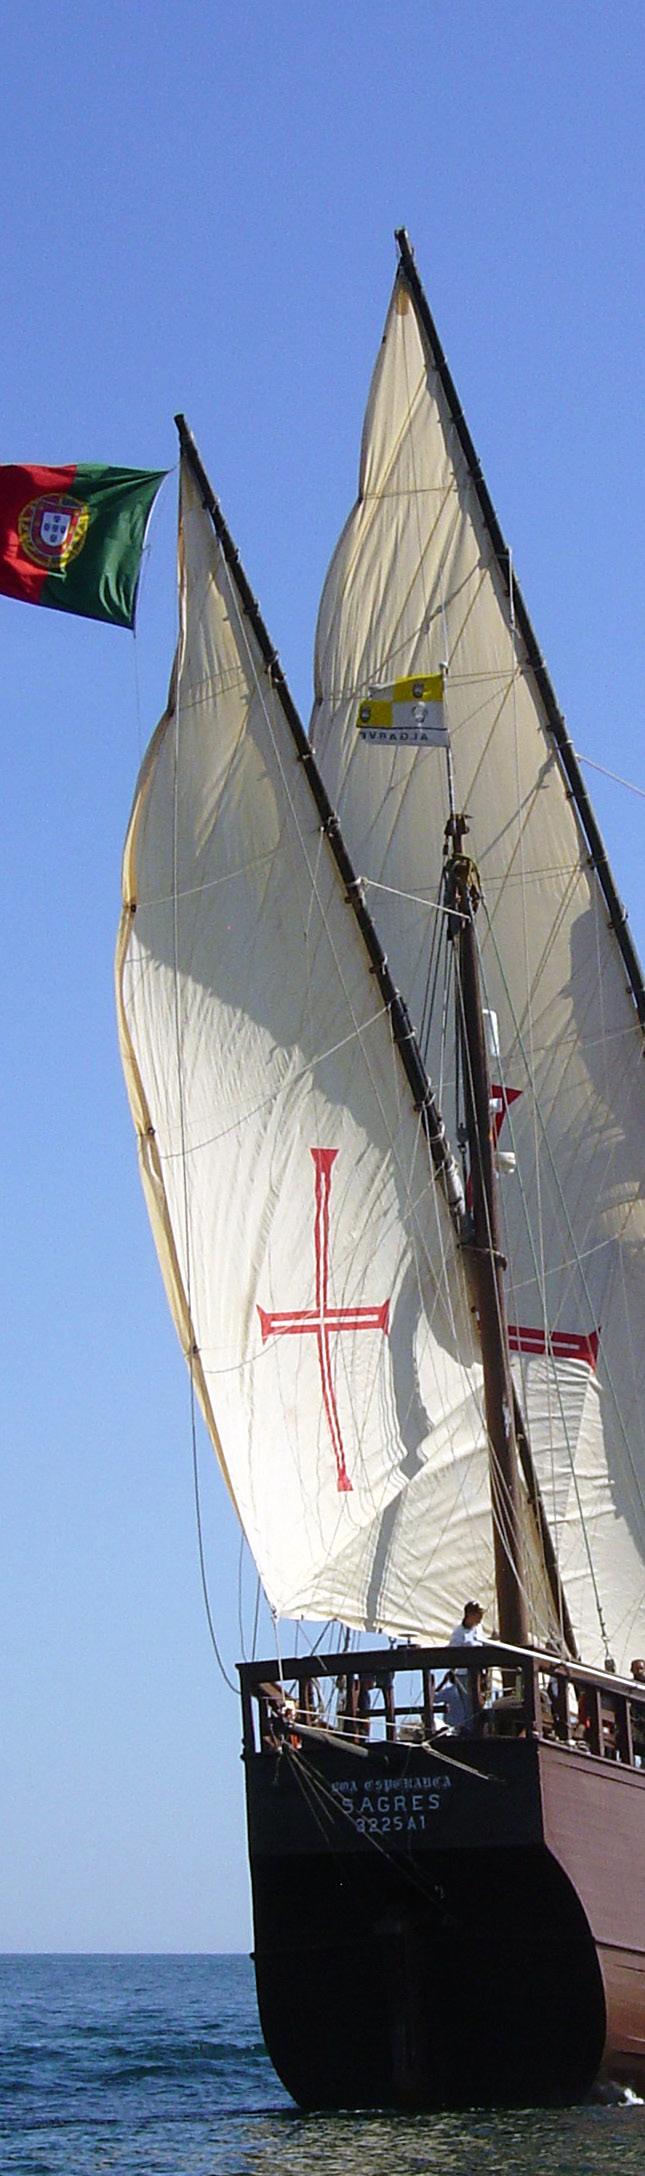 CARABELA BOA ESPERANÇA Réplica de uno de los barcos más célebres de la historia de los descubrimientos marítimos